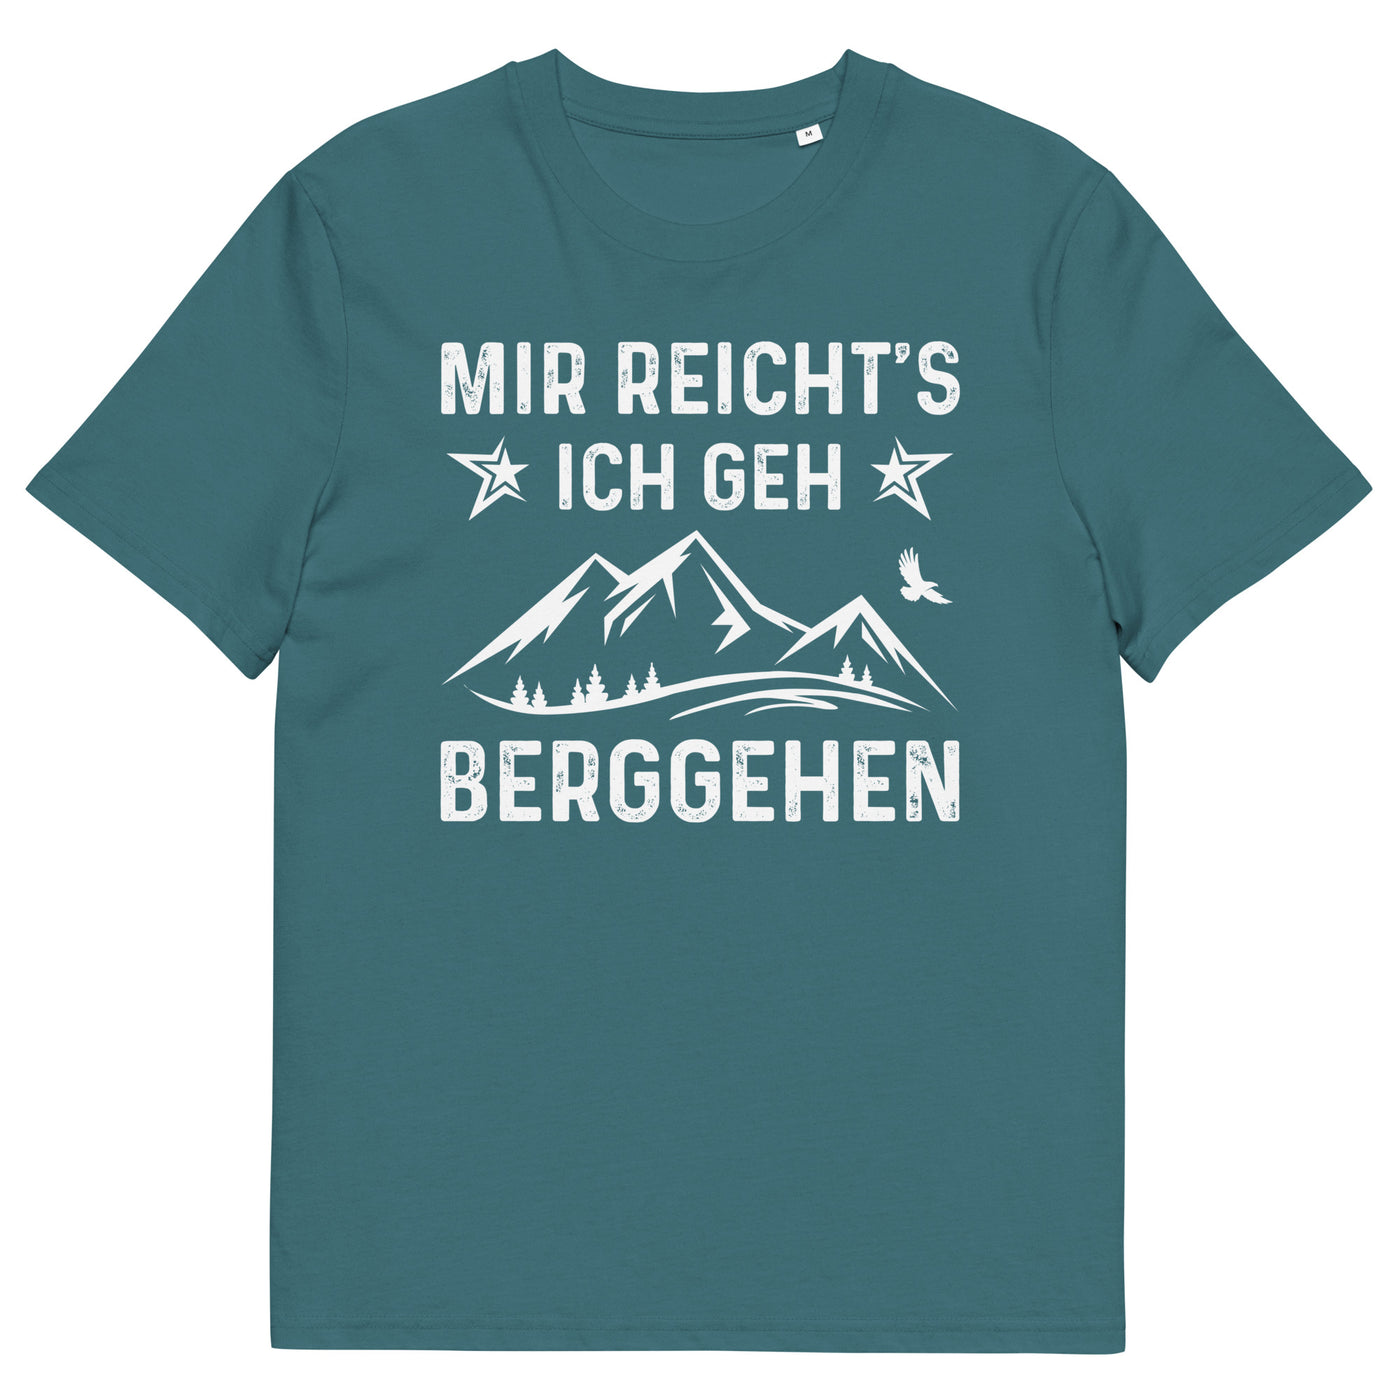 Mir Reicht's Ich Gen Berggehen - Herren Premium Organic T-Shirt berge xxx yyy zzz Stargazer